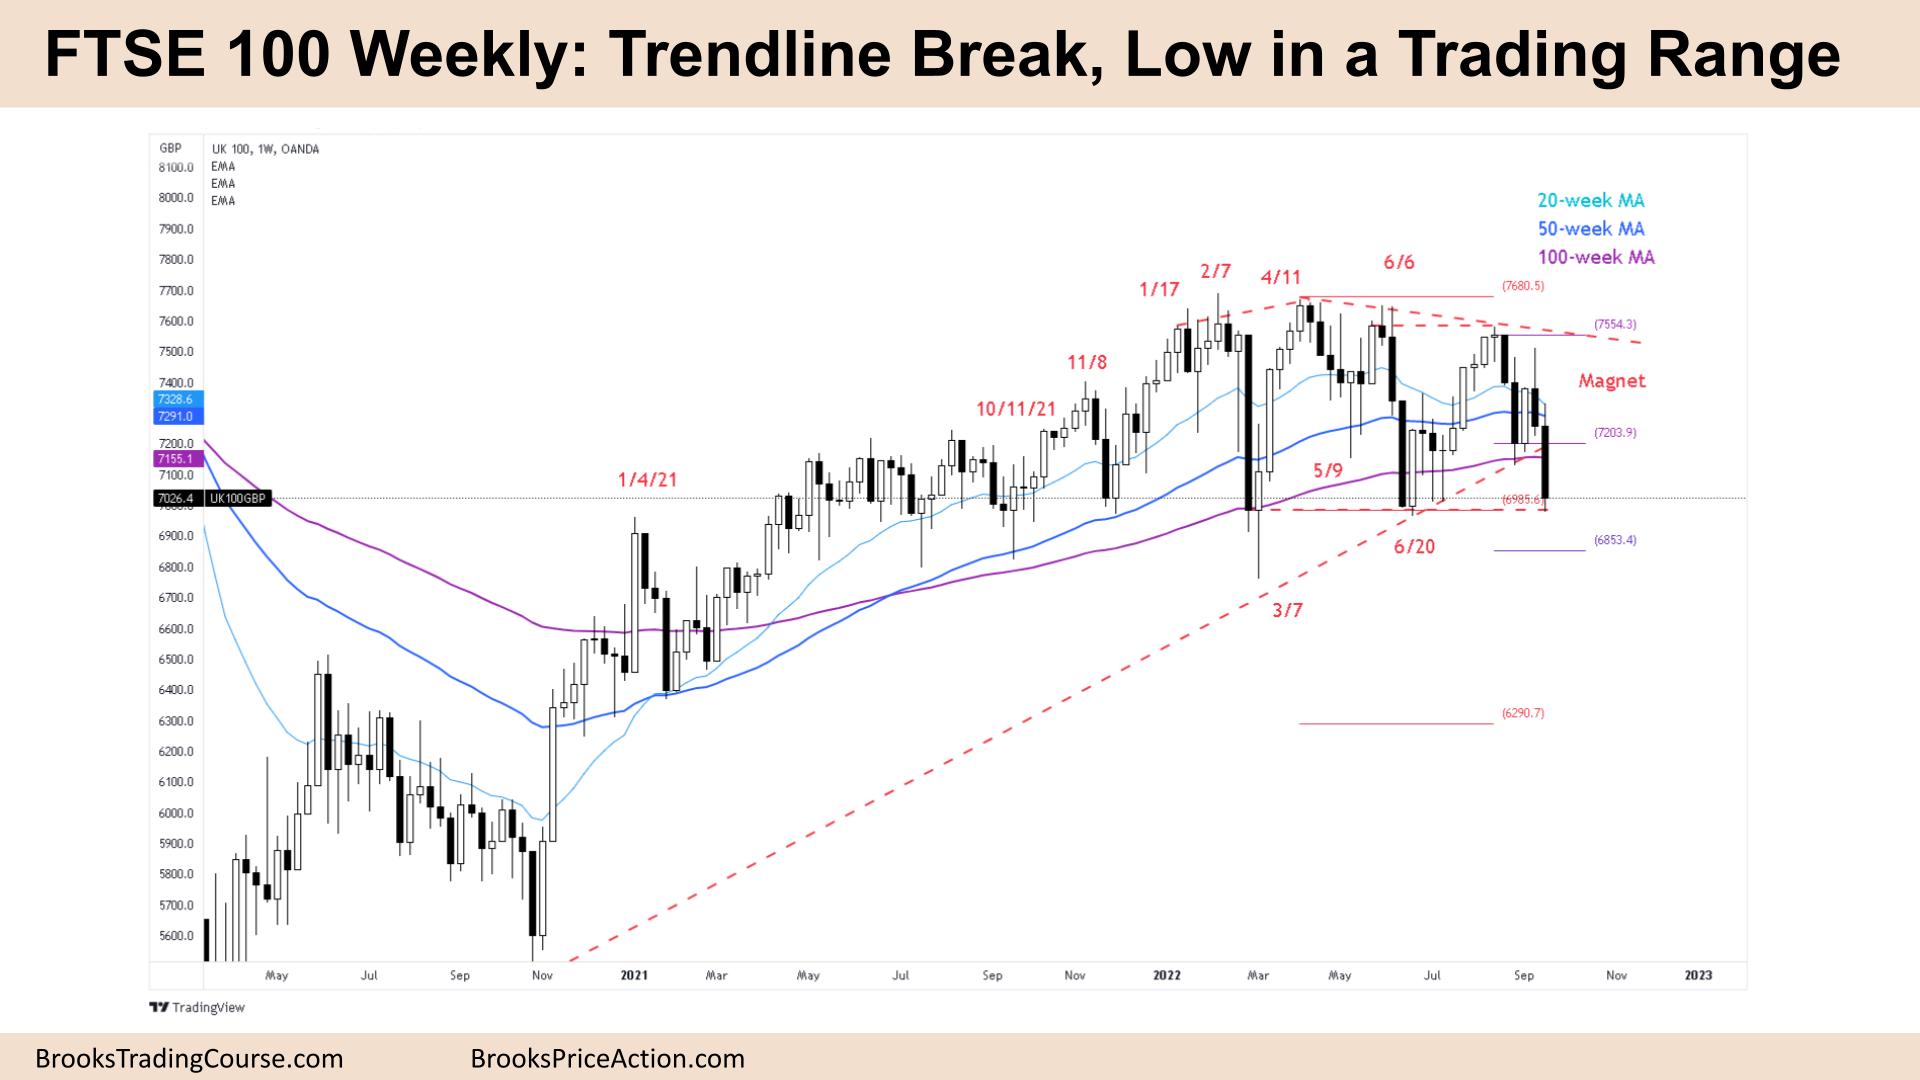 FTSE 100 Weekly Trendline Break, Low in a Trading Range